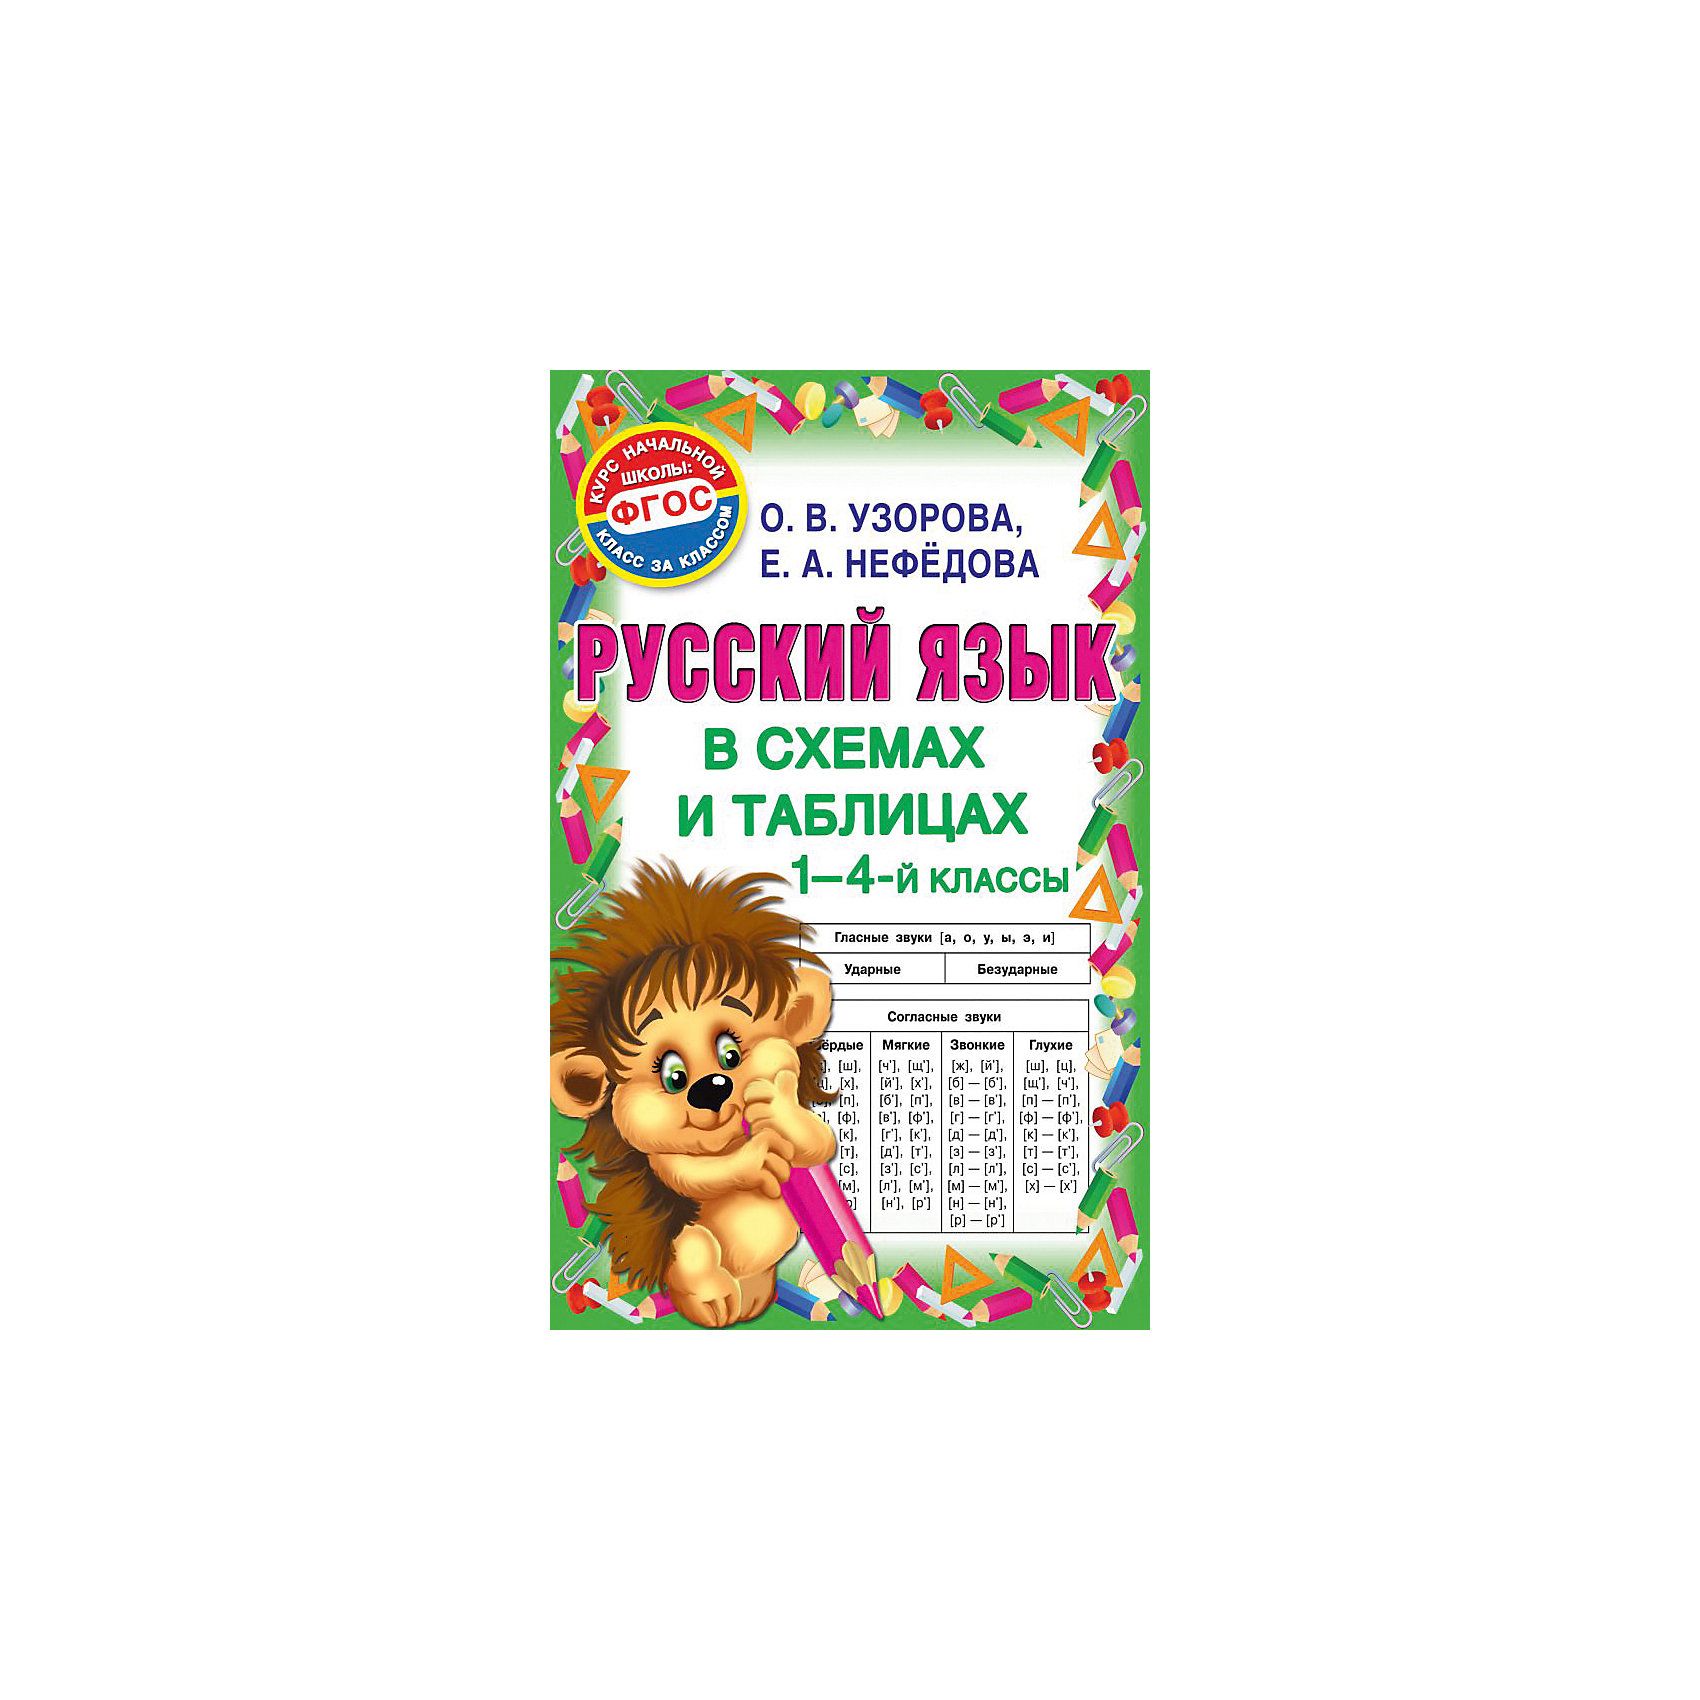 Купить пособия по русскому языку. Русский язык в таблицах и схемах для школьников и абитуриентов.